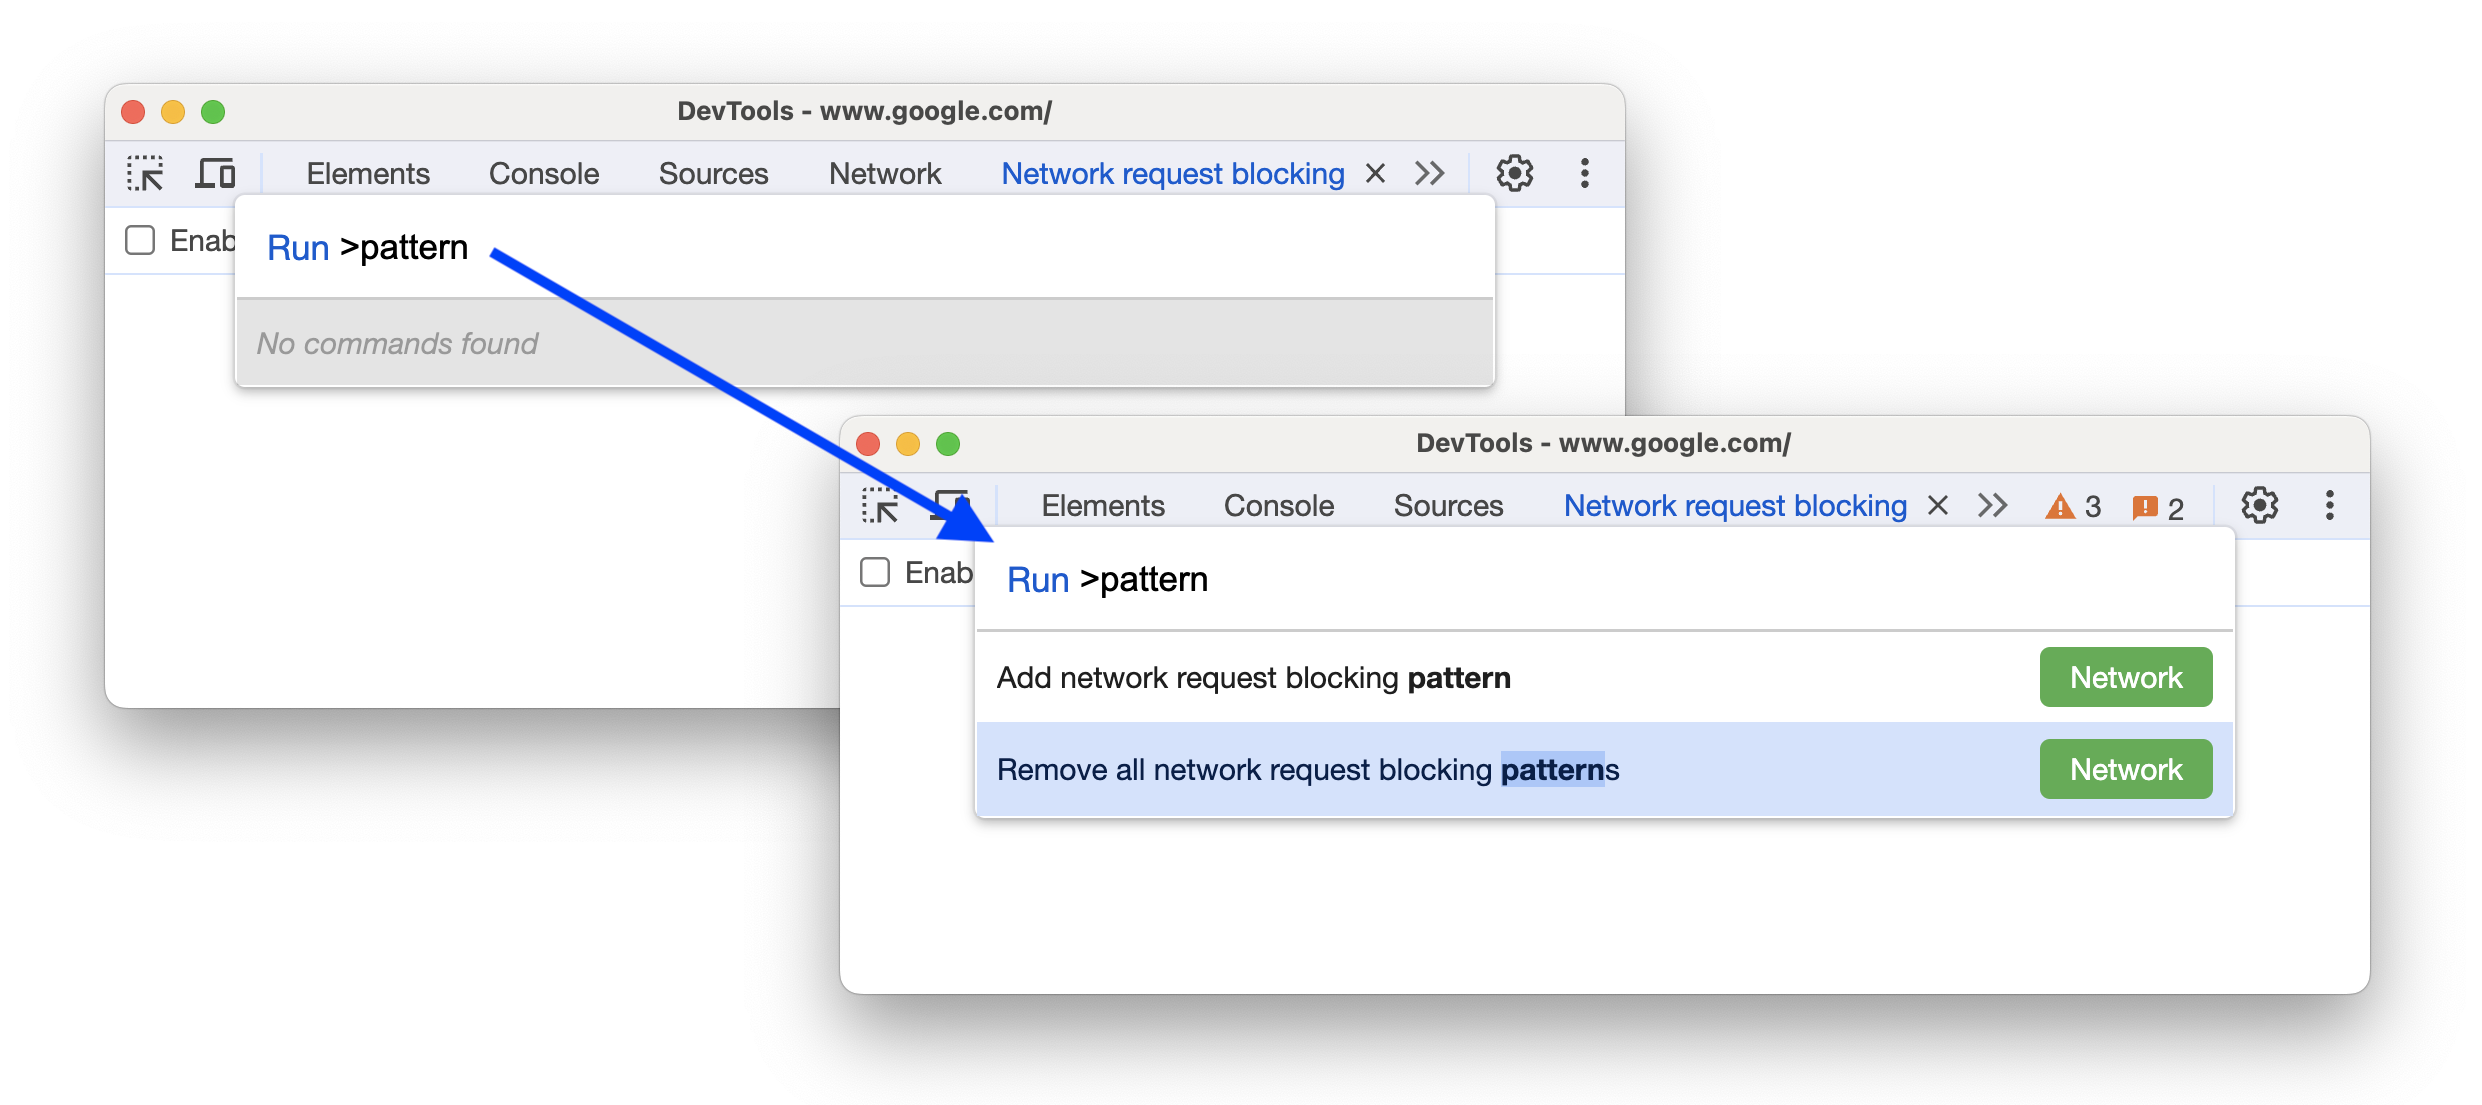 नेटवर्क ब्लॉक करने के पैटर्न जोड़ने या हटाने के लिए, नए निर्देश जोड़ने से पहले और बाद में.